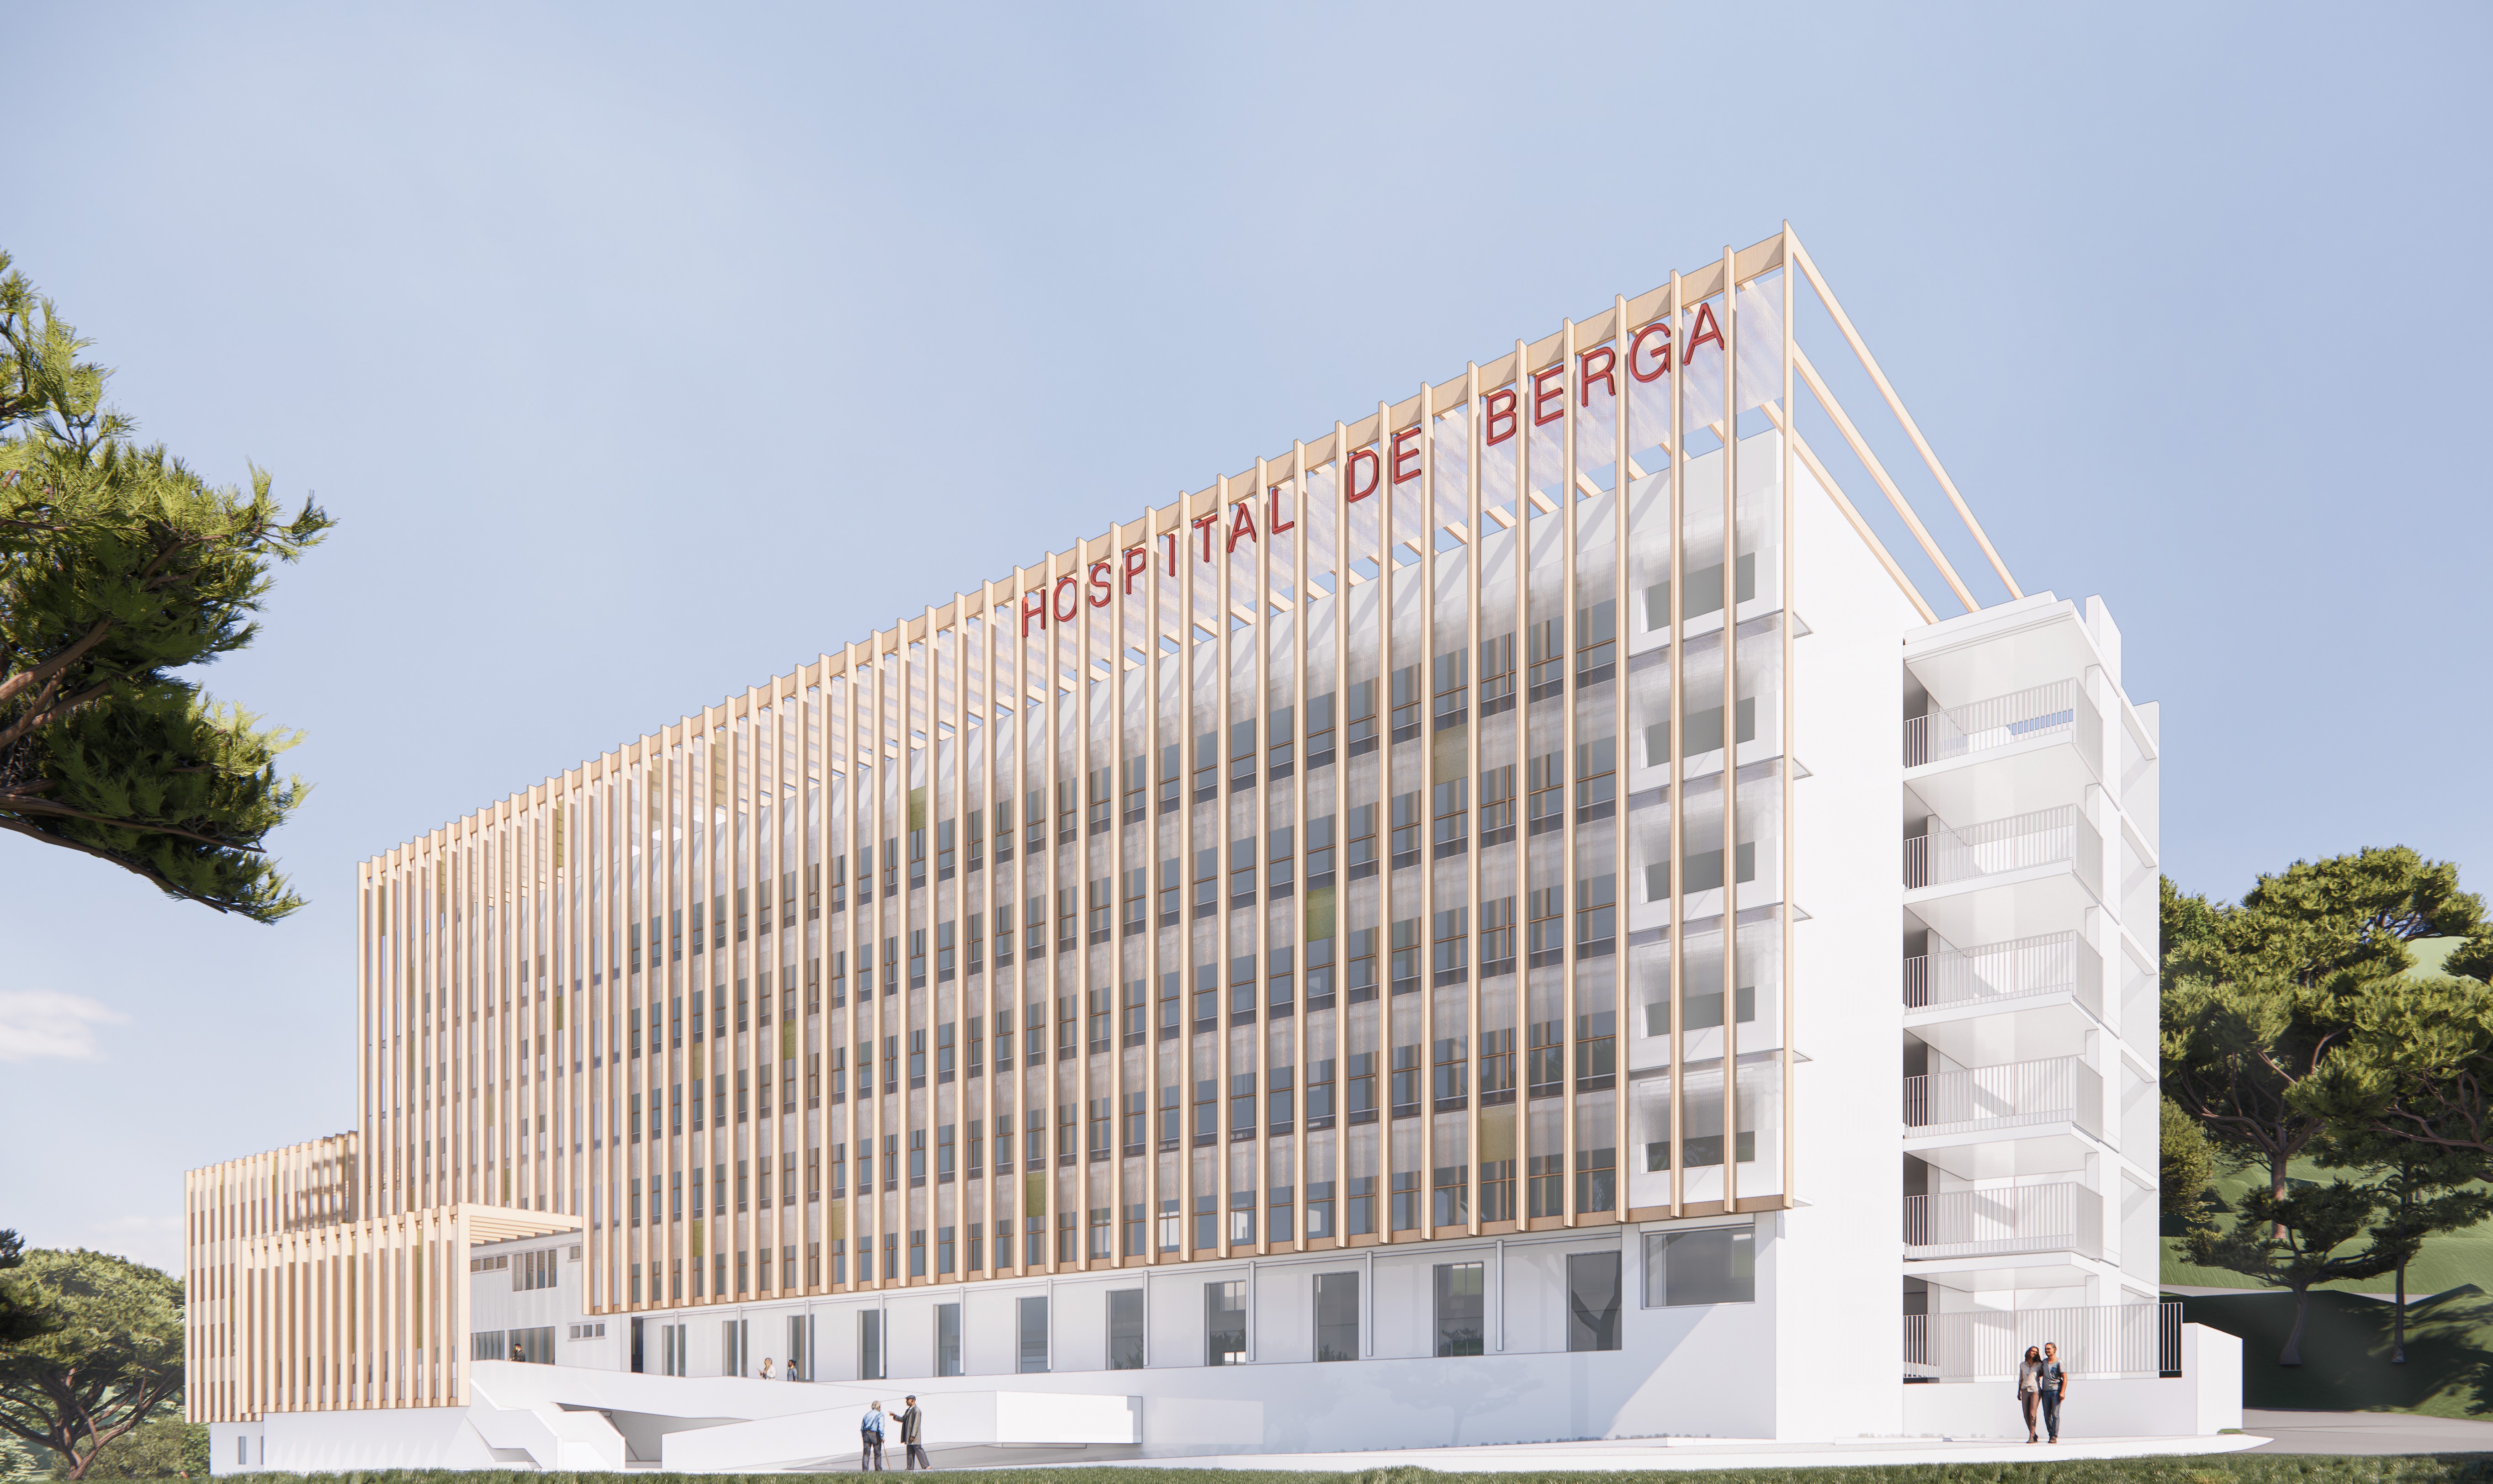 Detall del disseny arquitectònic projectat a l'Hospital de Berga.